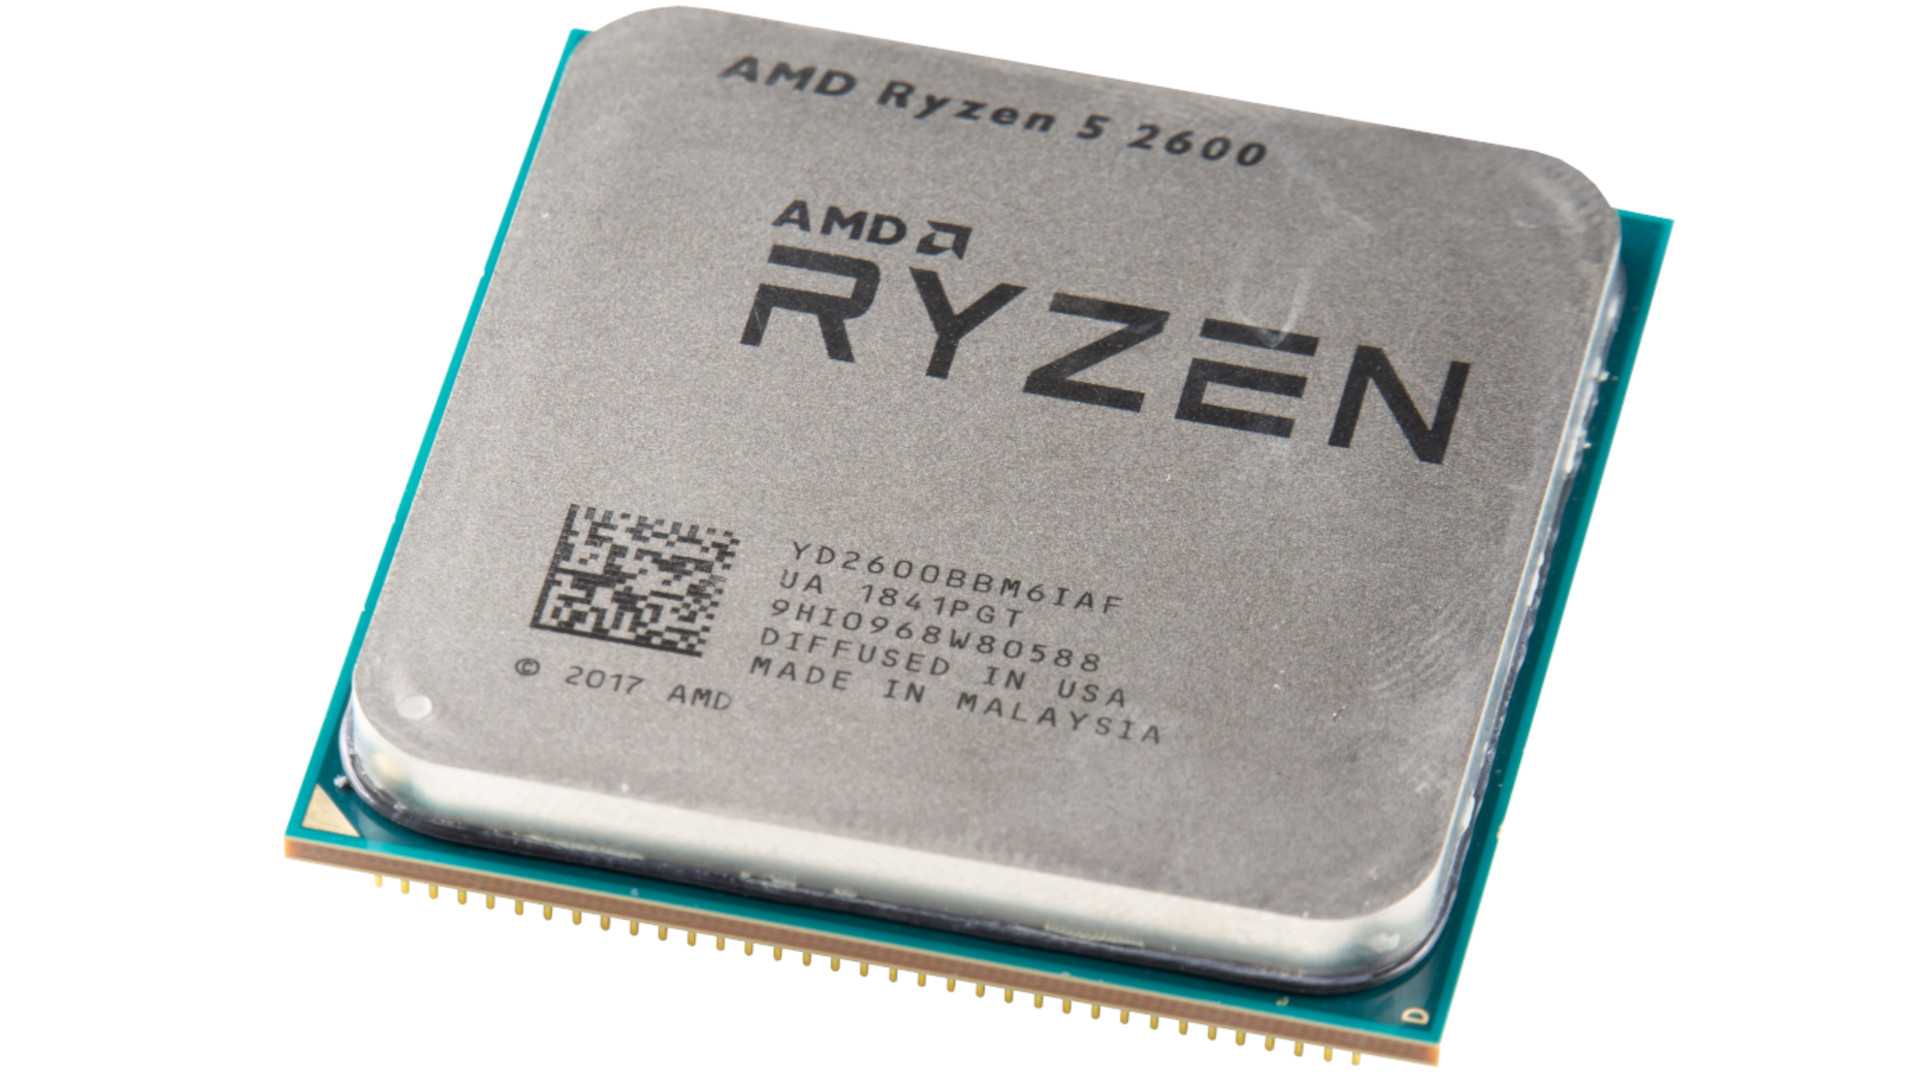 AMD Ryzen 5 2600 5